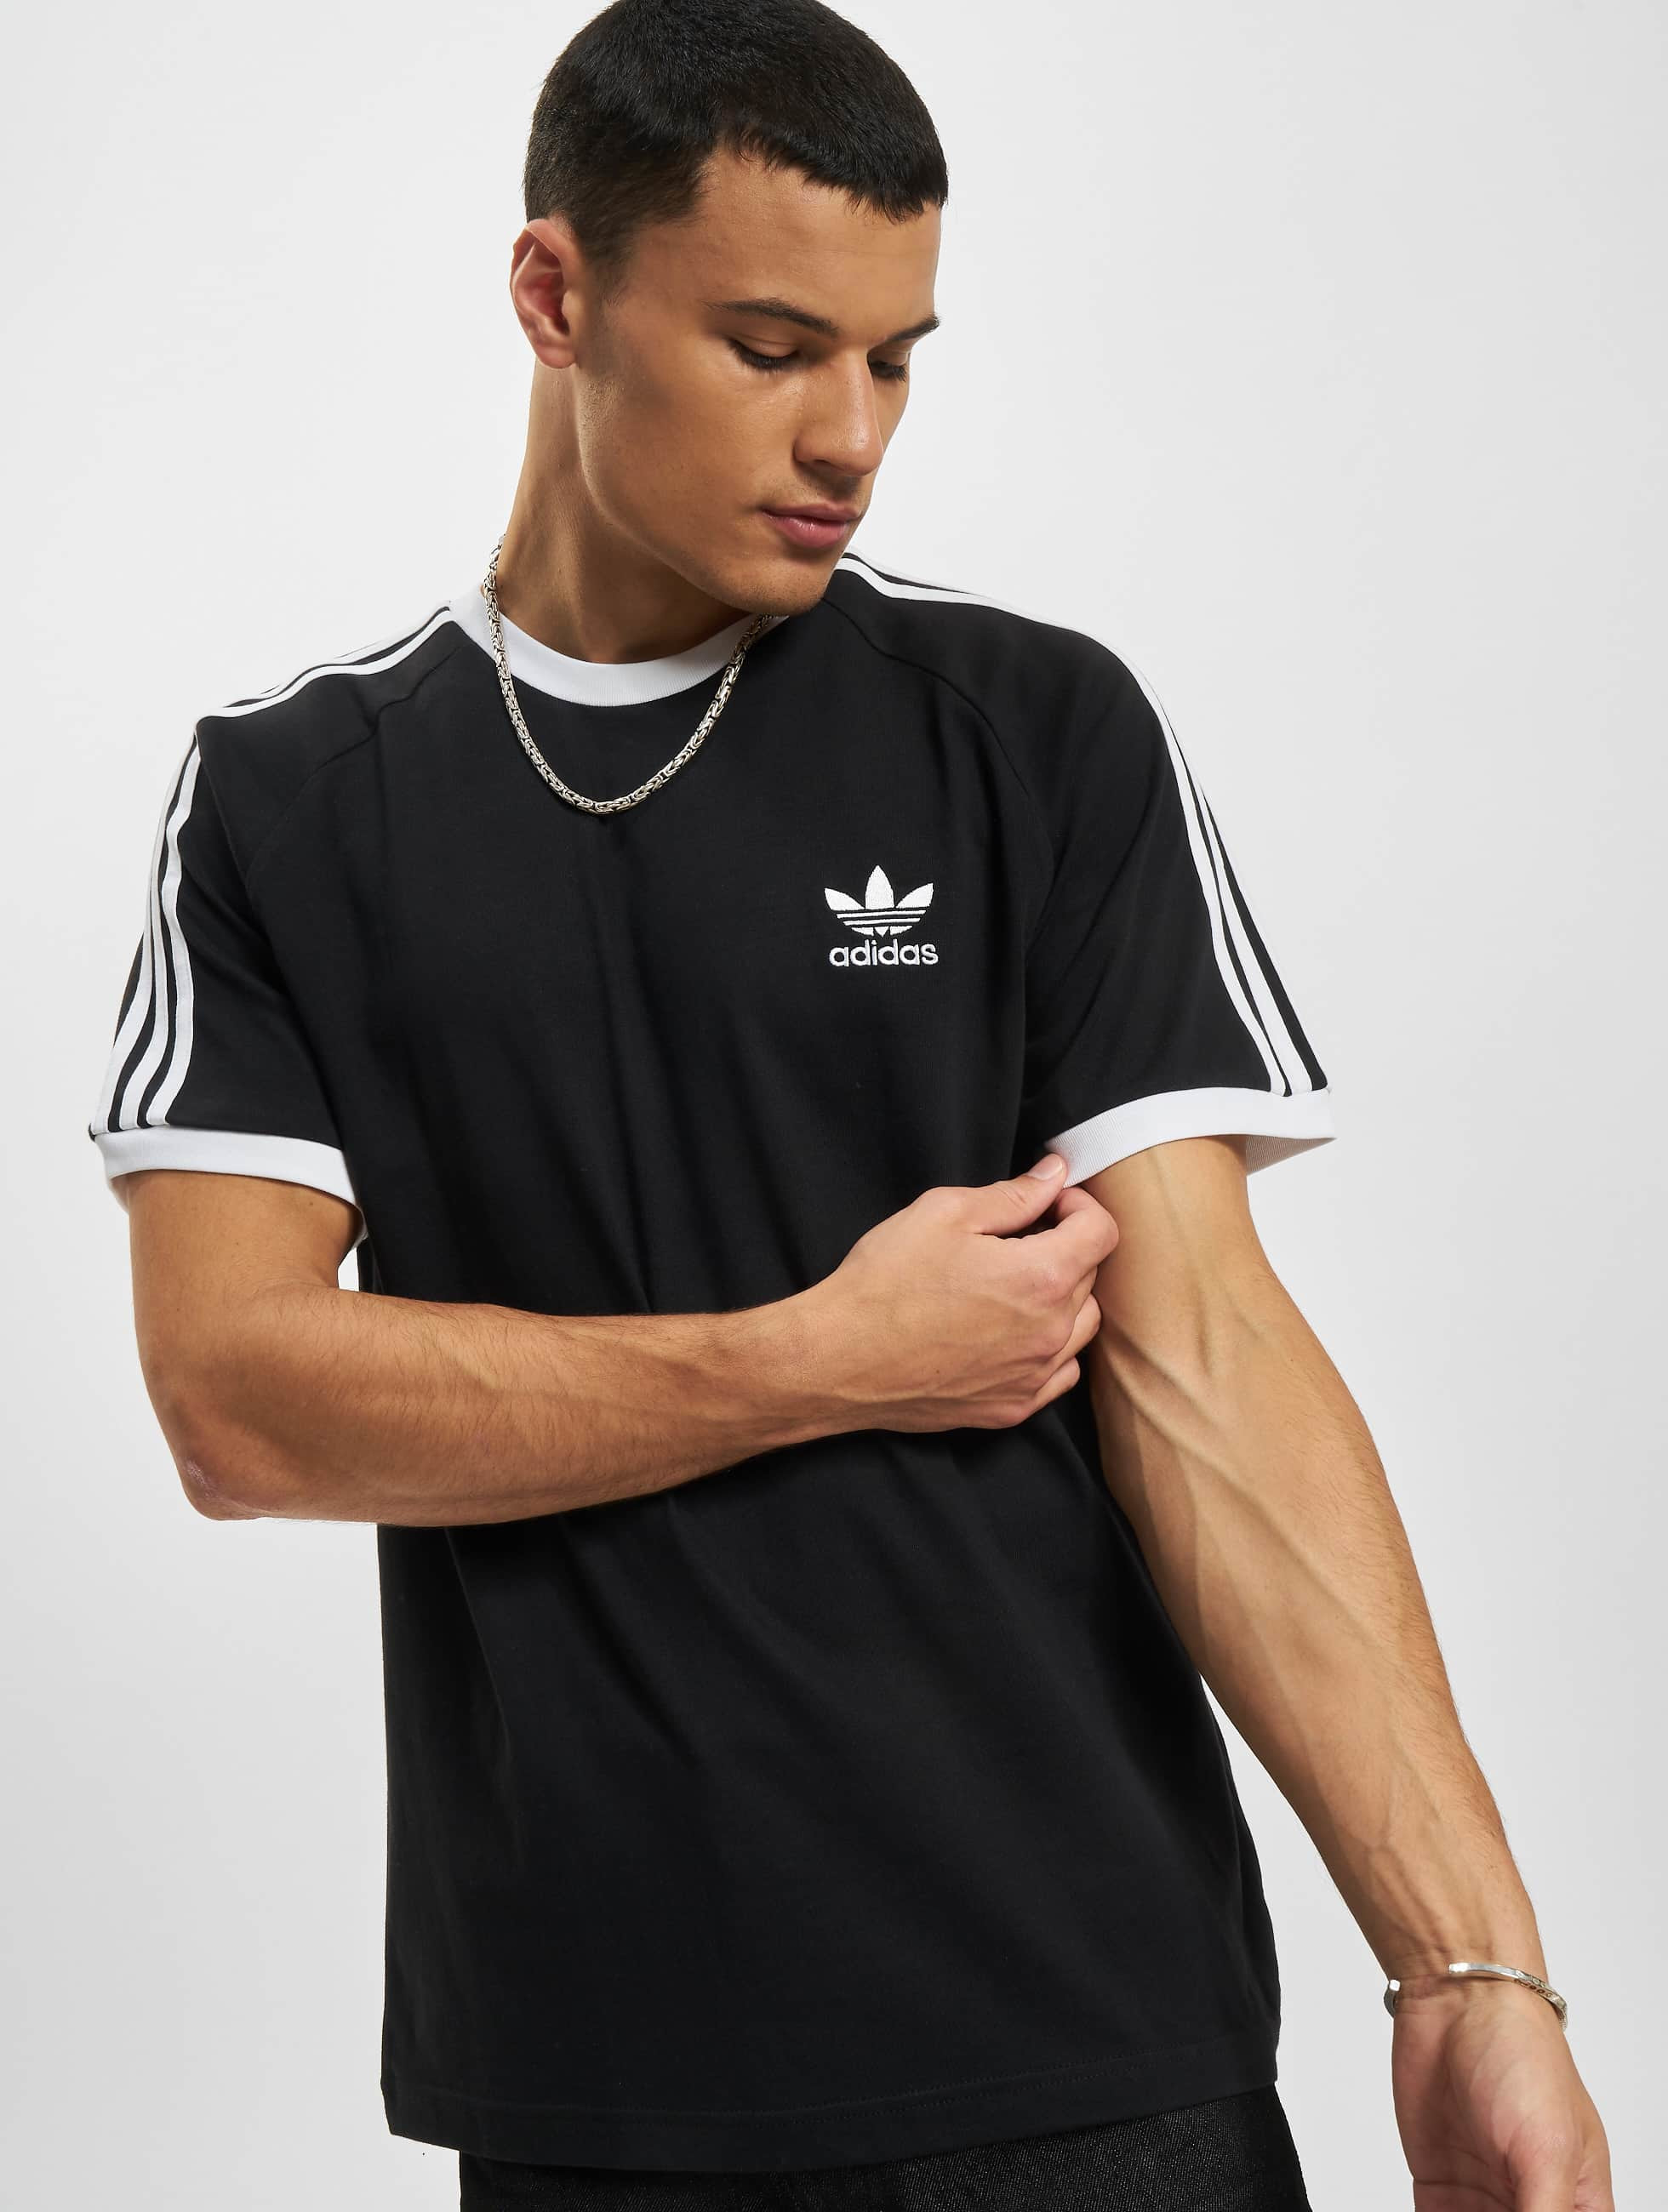 adidas Originals Overwear / T-Shirt 3 Stripes in black 995378